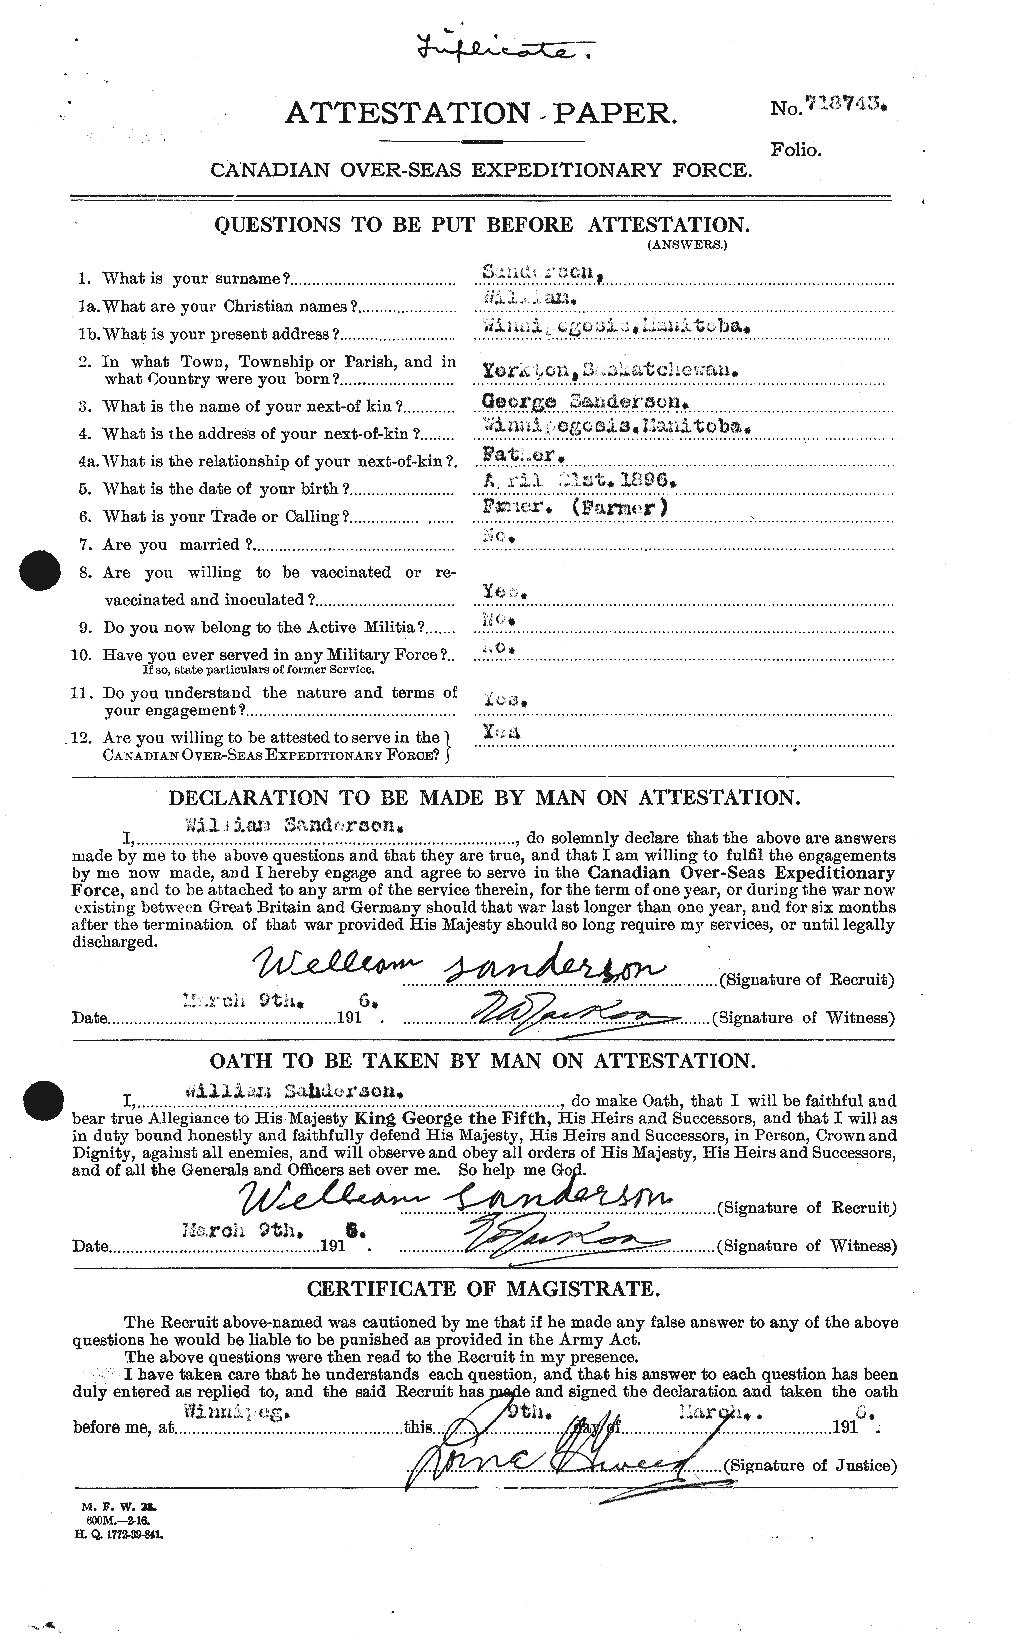 Dossiers du Personnel de la Première Guerre mondiale - CEC 079668a